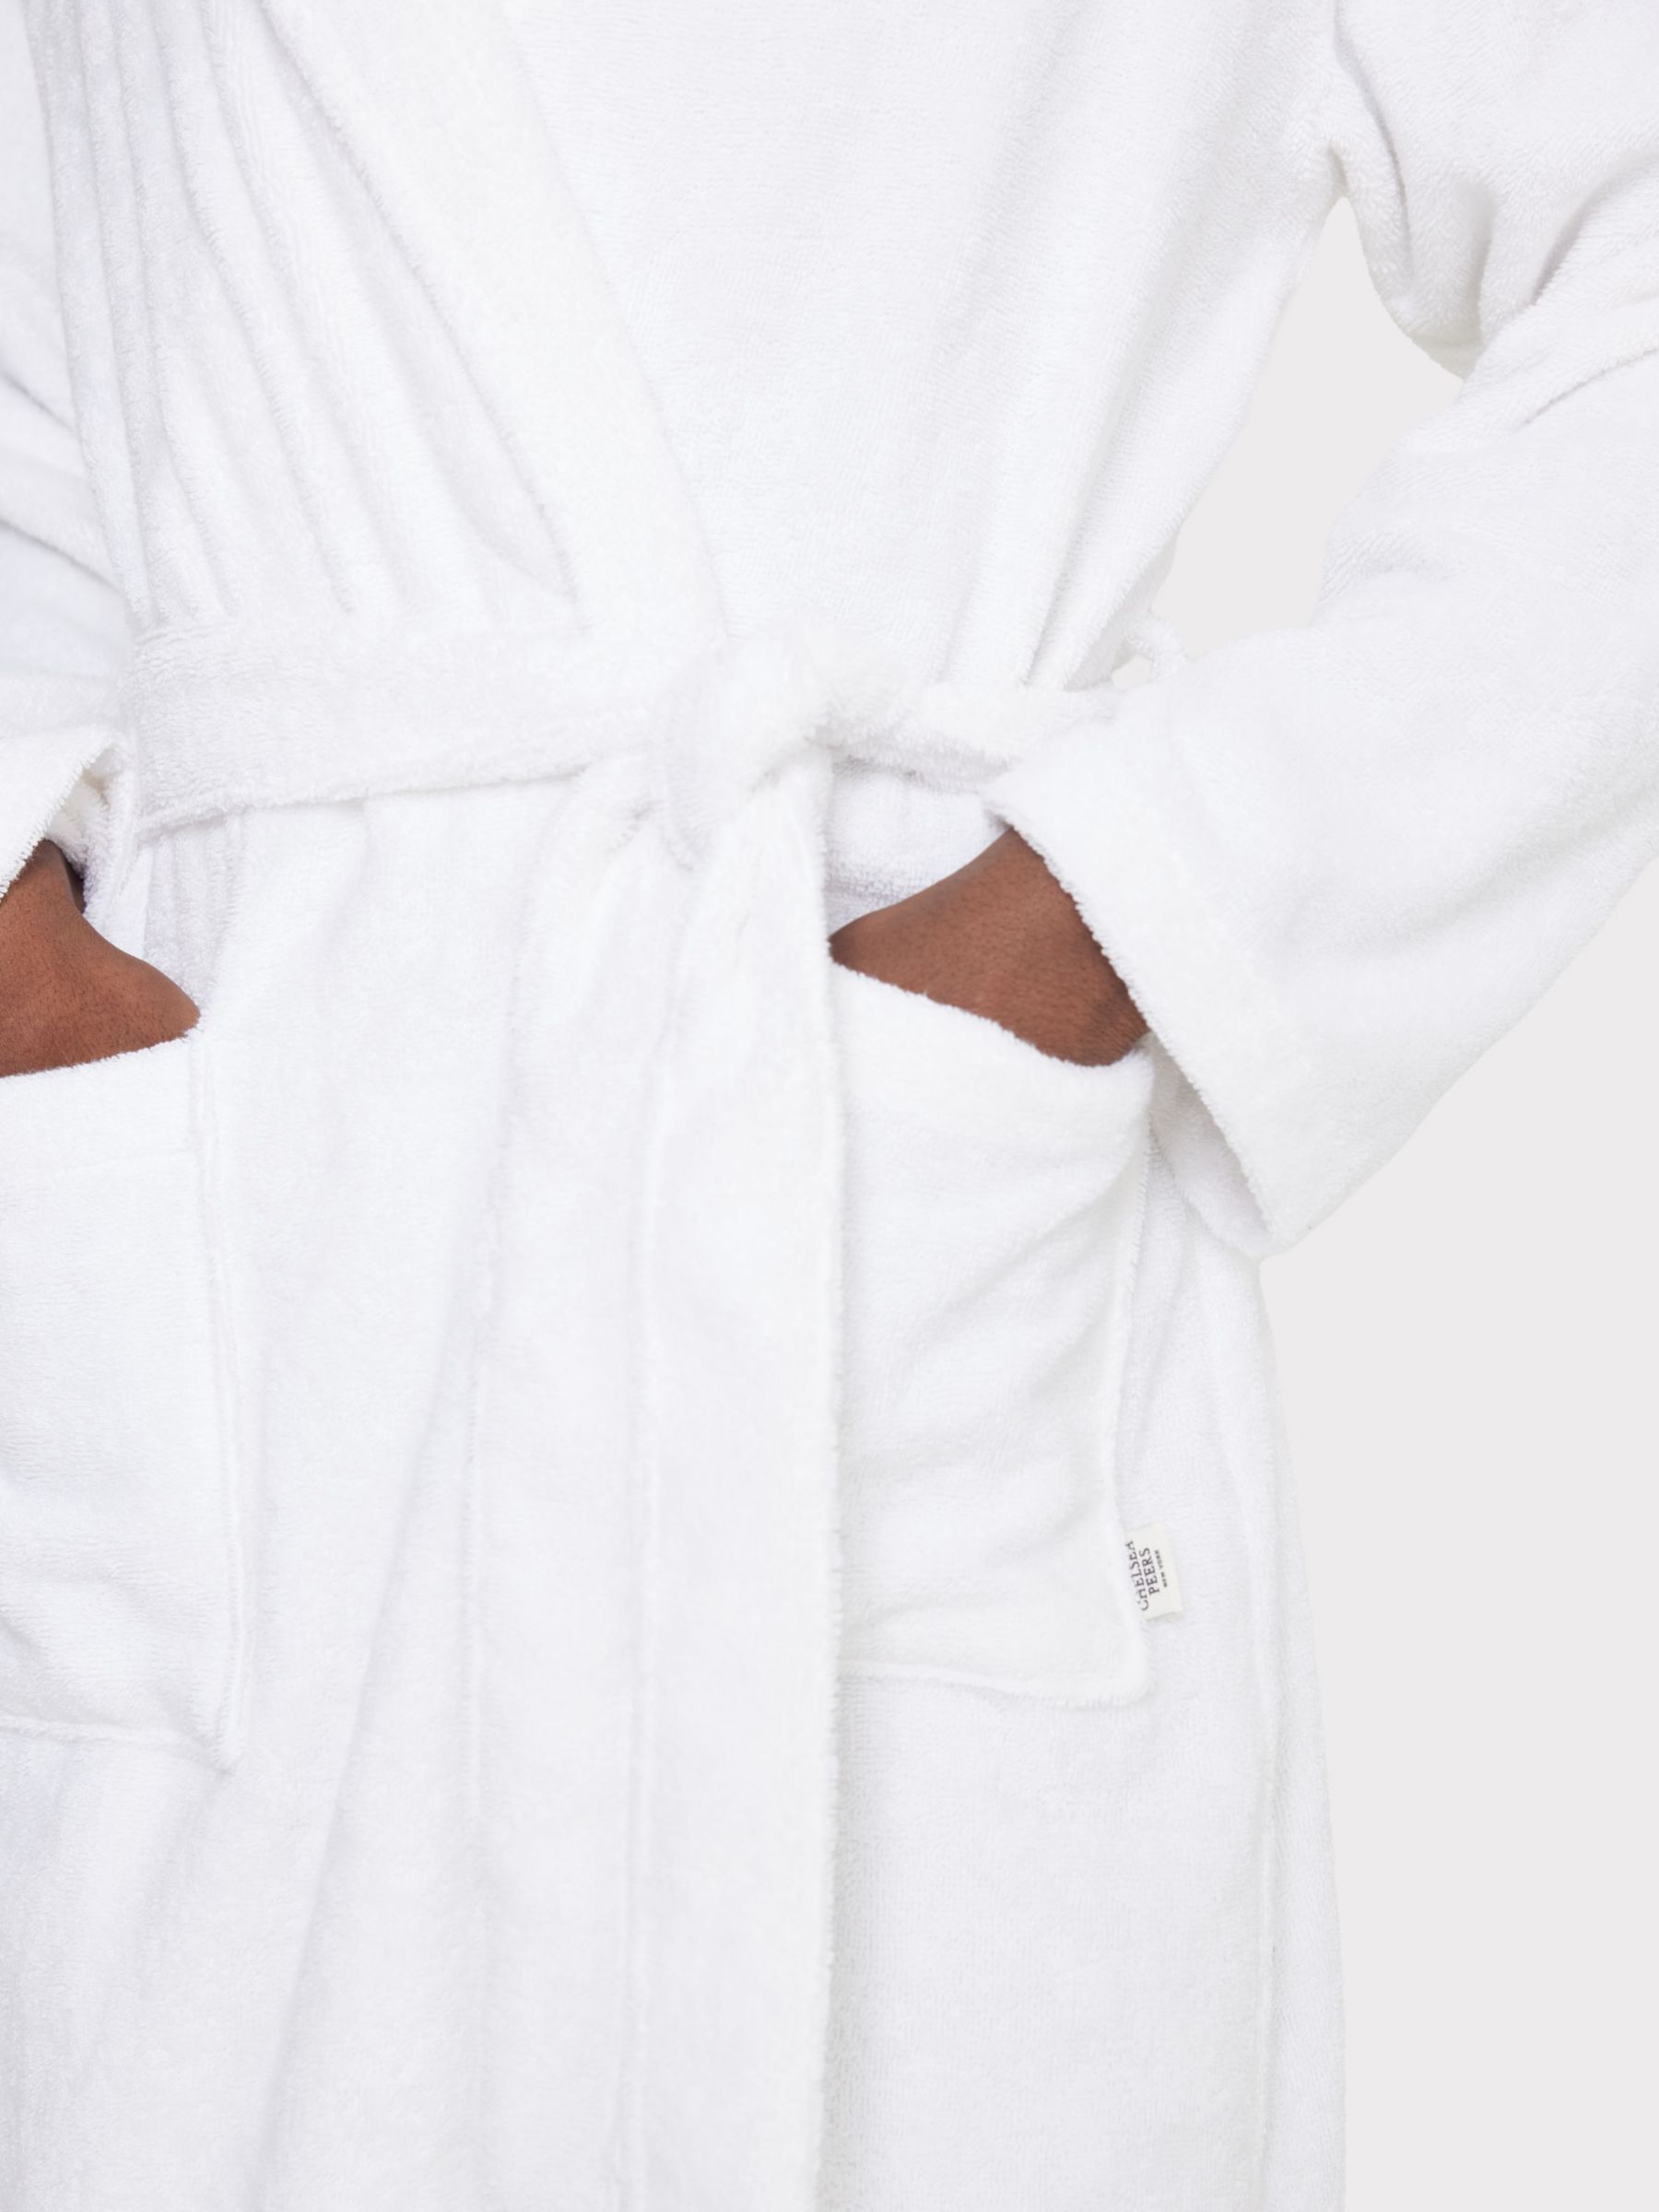 Buy Chelsea Peers Premium Towelling Robe Online at johnlewis.com